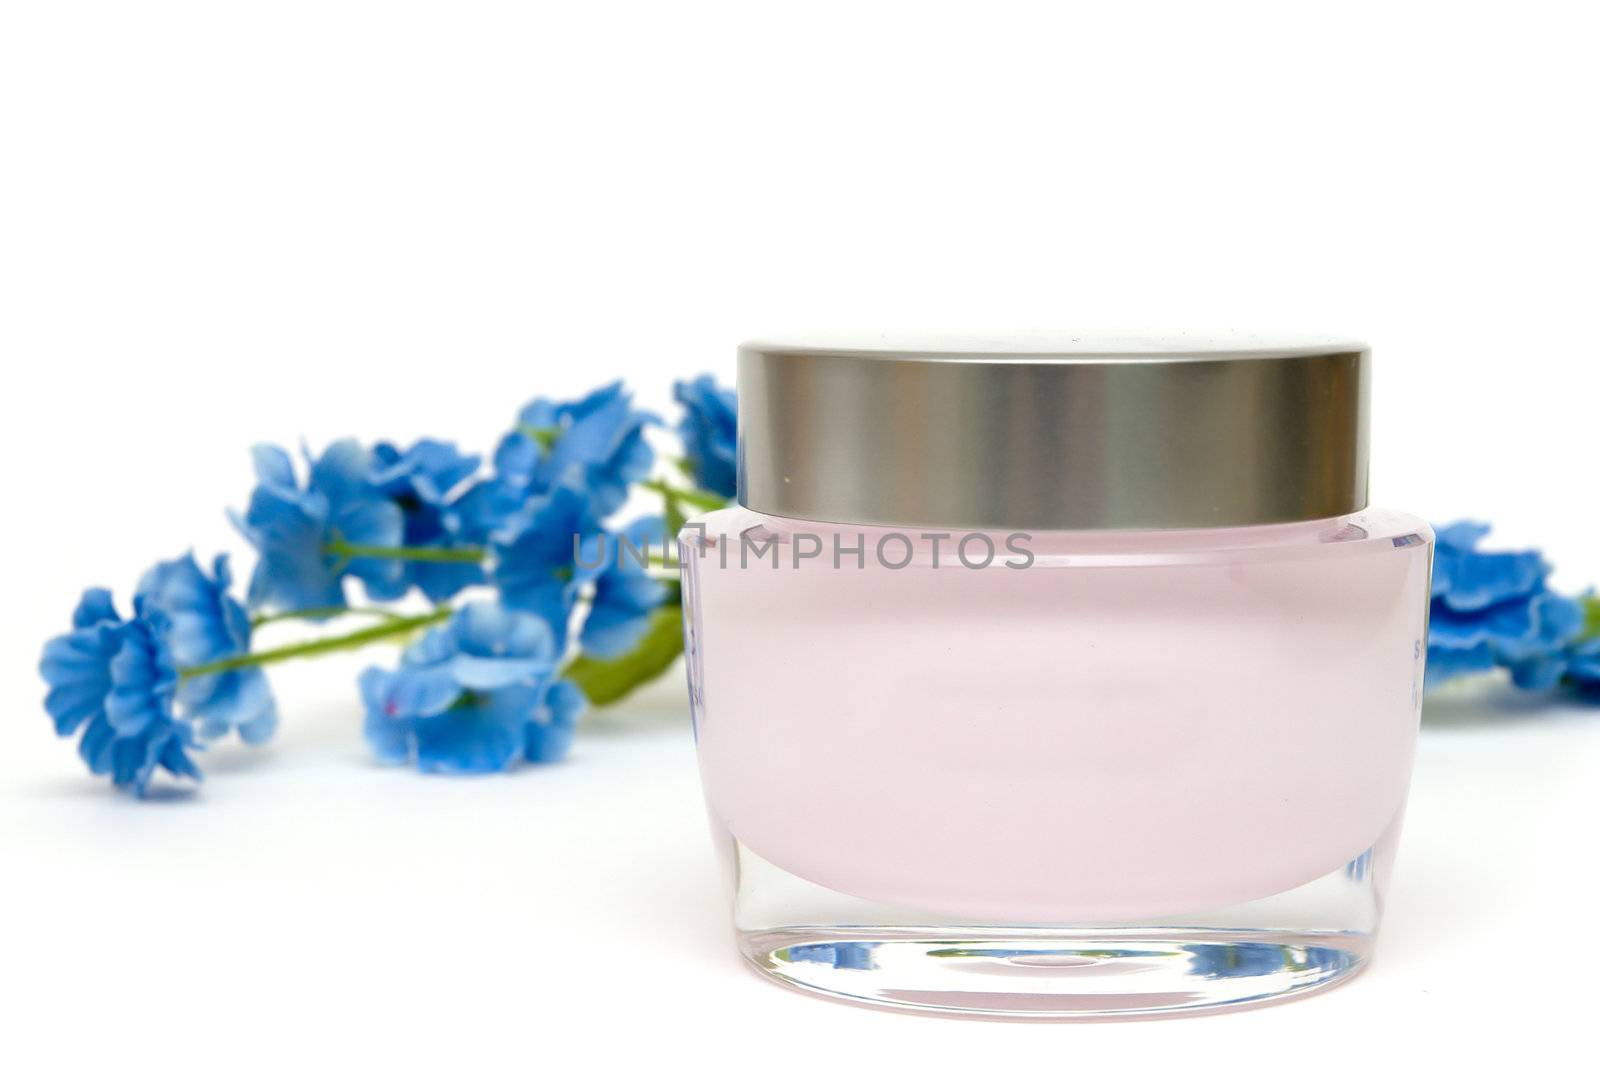 moisturizer cream and flower by semenovp